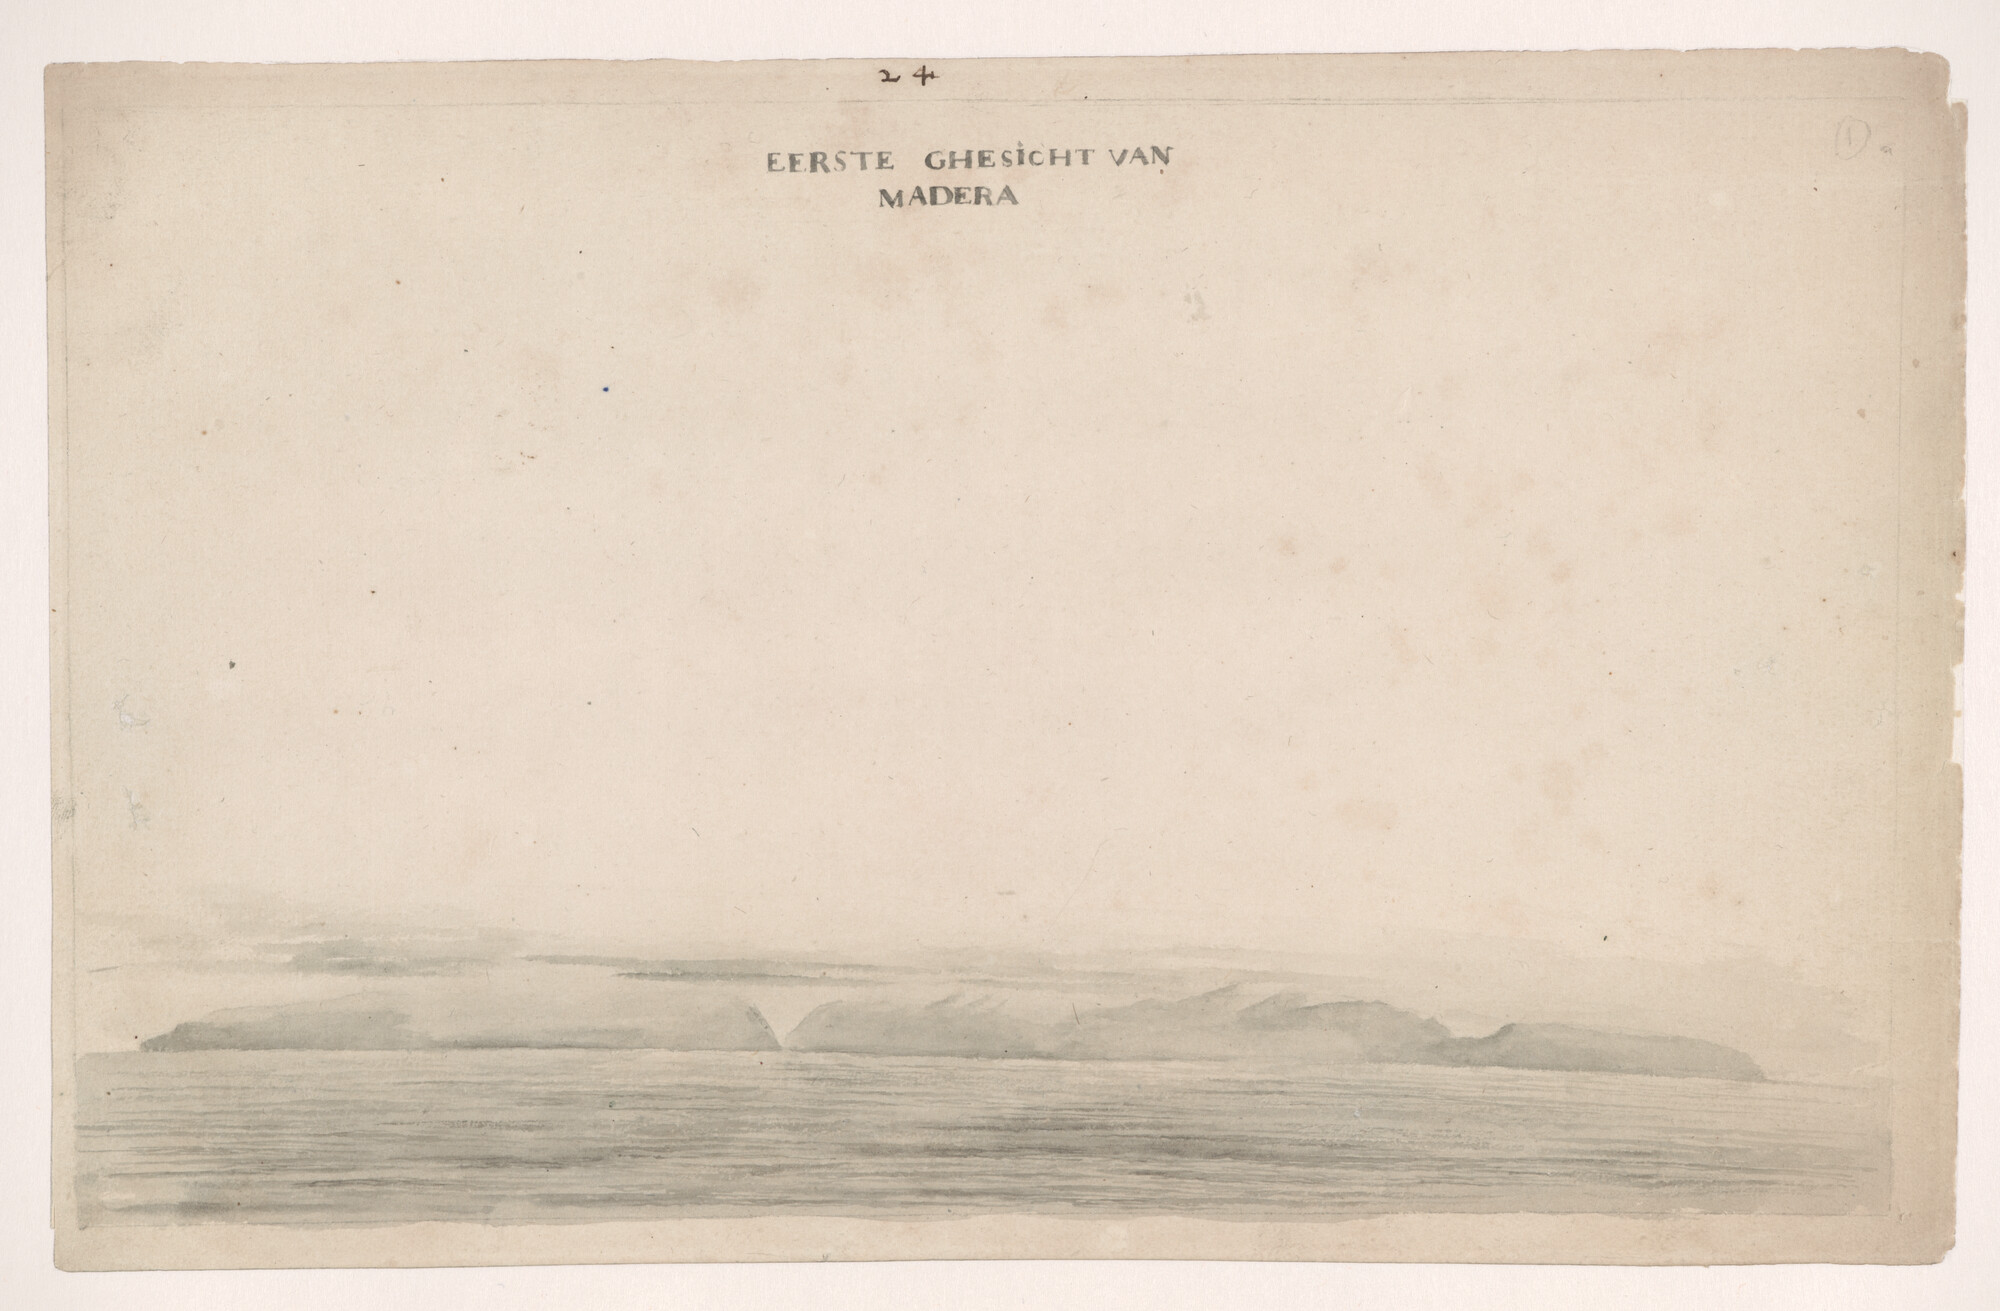 A.3457(01); Landverkenning van Madeira; tekening